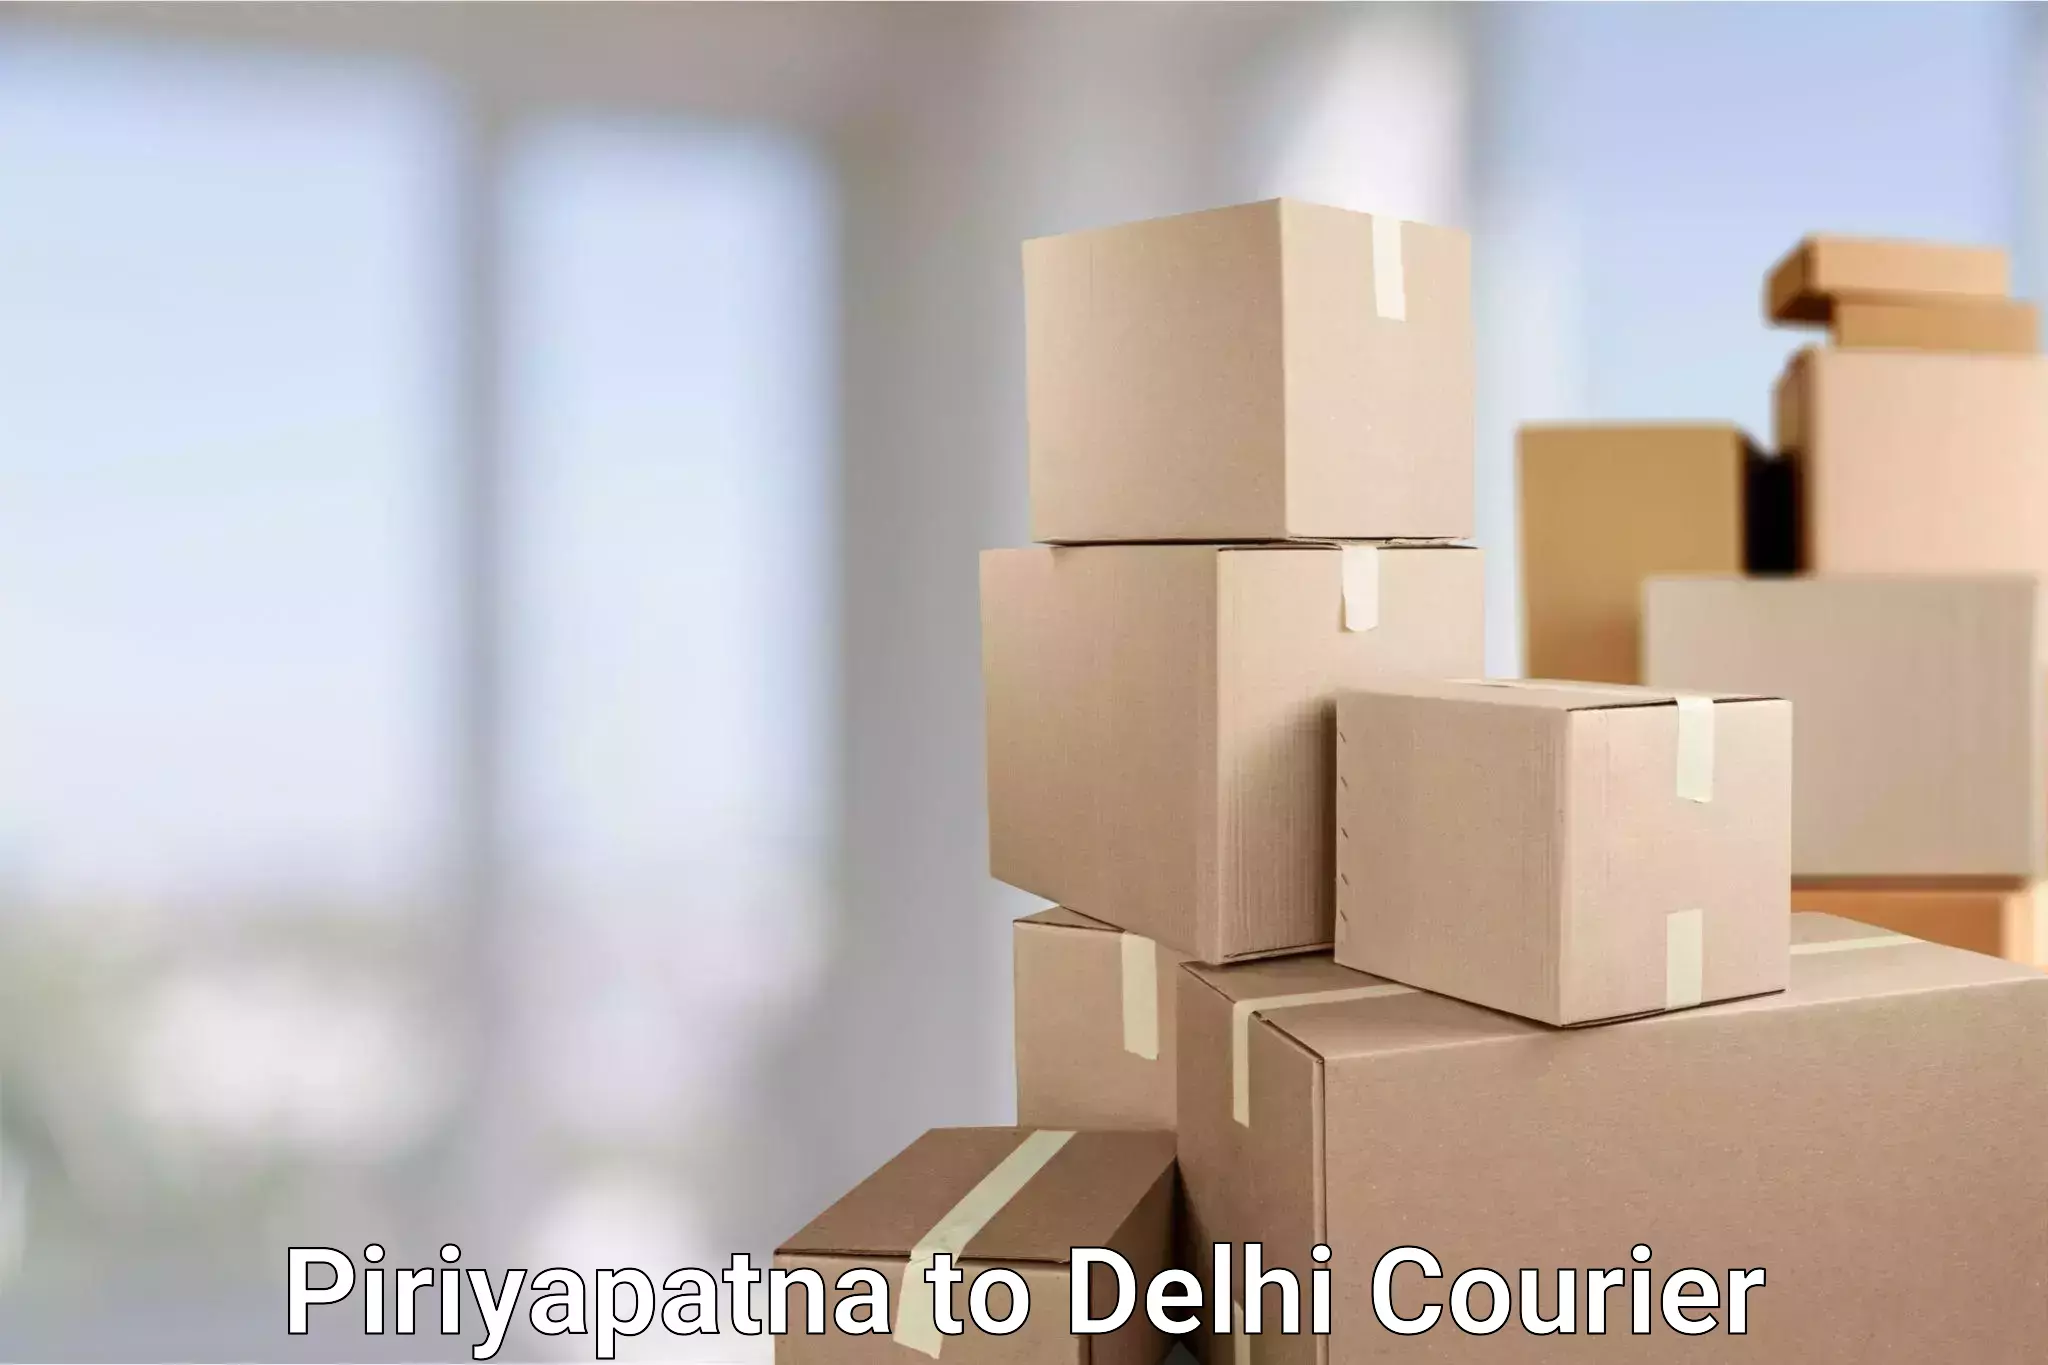 Cash on delivery service Piriyapatna to Delhi